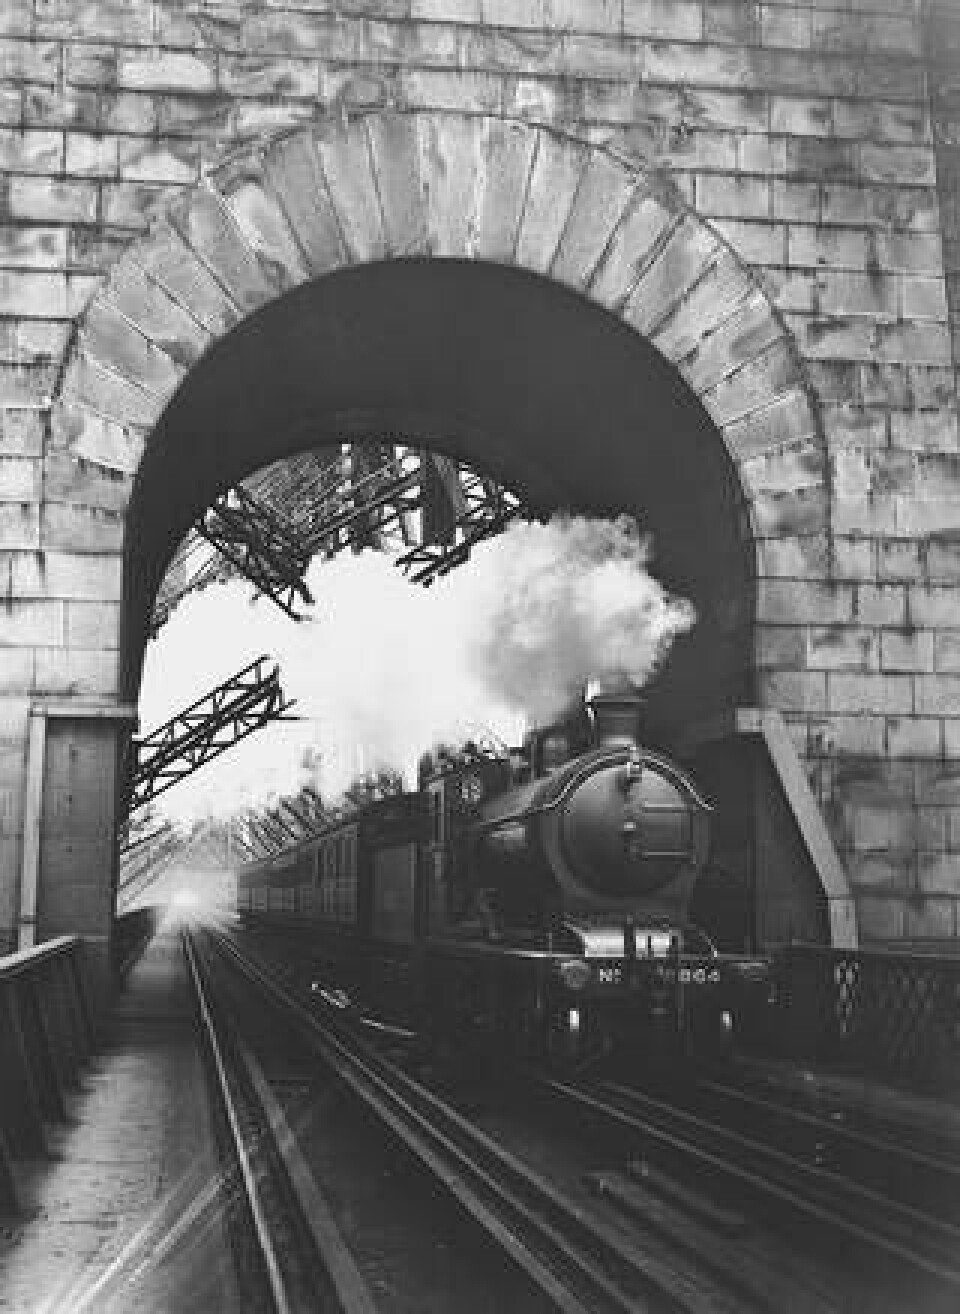 Tåget har fotograferats på väg av bron 1927. Foto: Hulton-Deutsch Collection/CORBIS